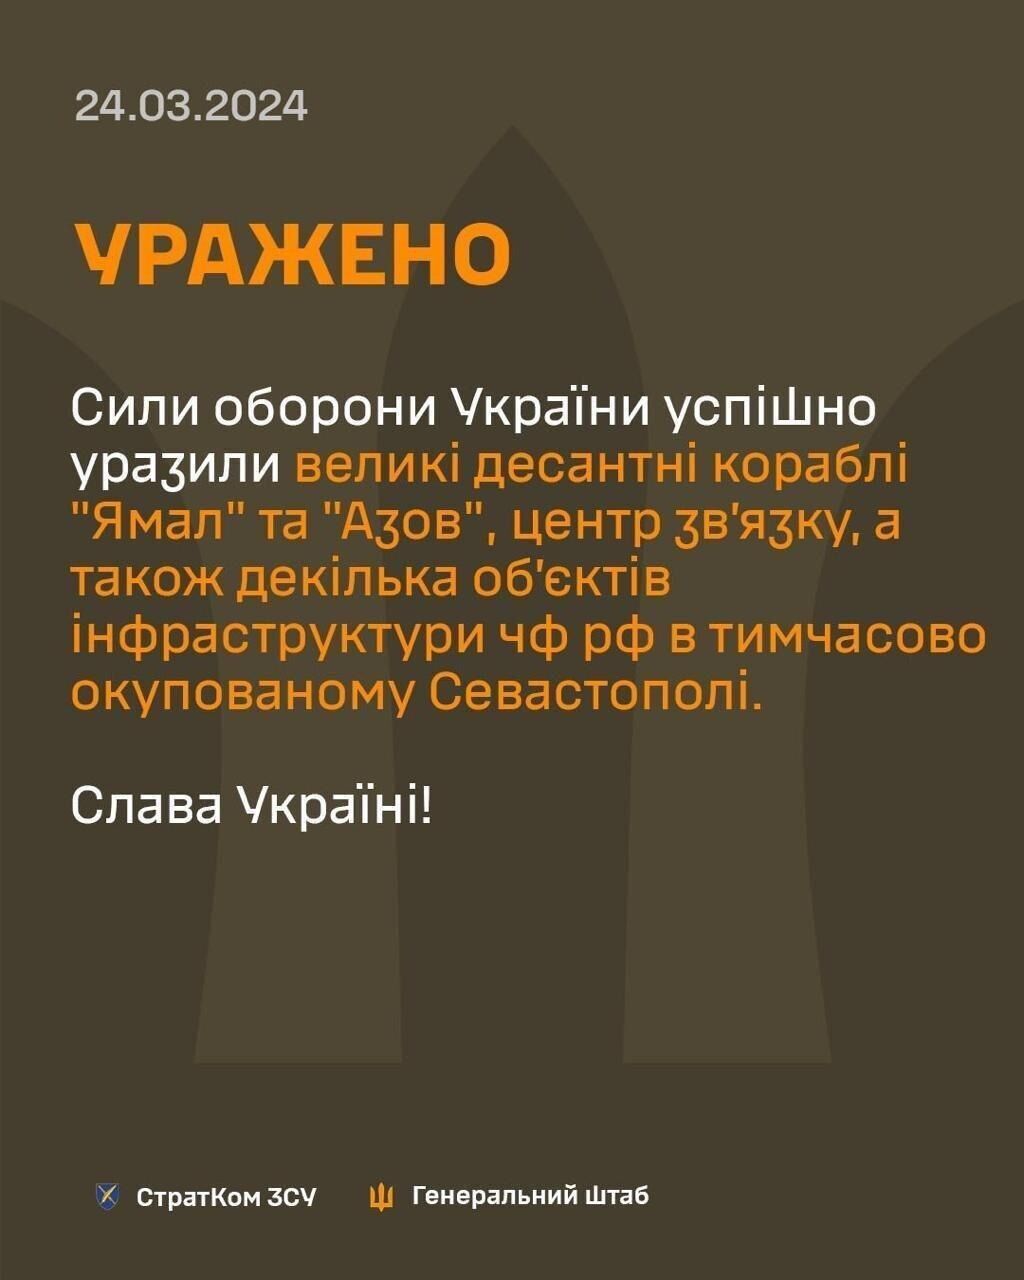 Генштаб подтвердил успешный удар по центру связи оккупантов в Крыму: также поражены корабли "Ямал" и "Азов"